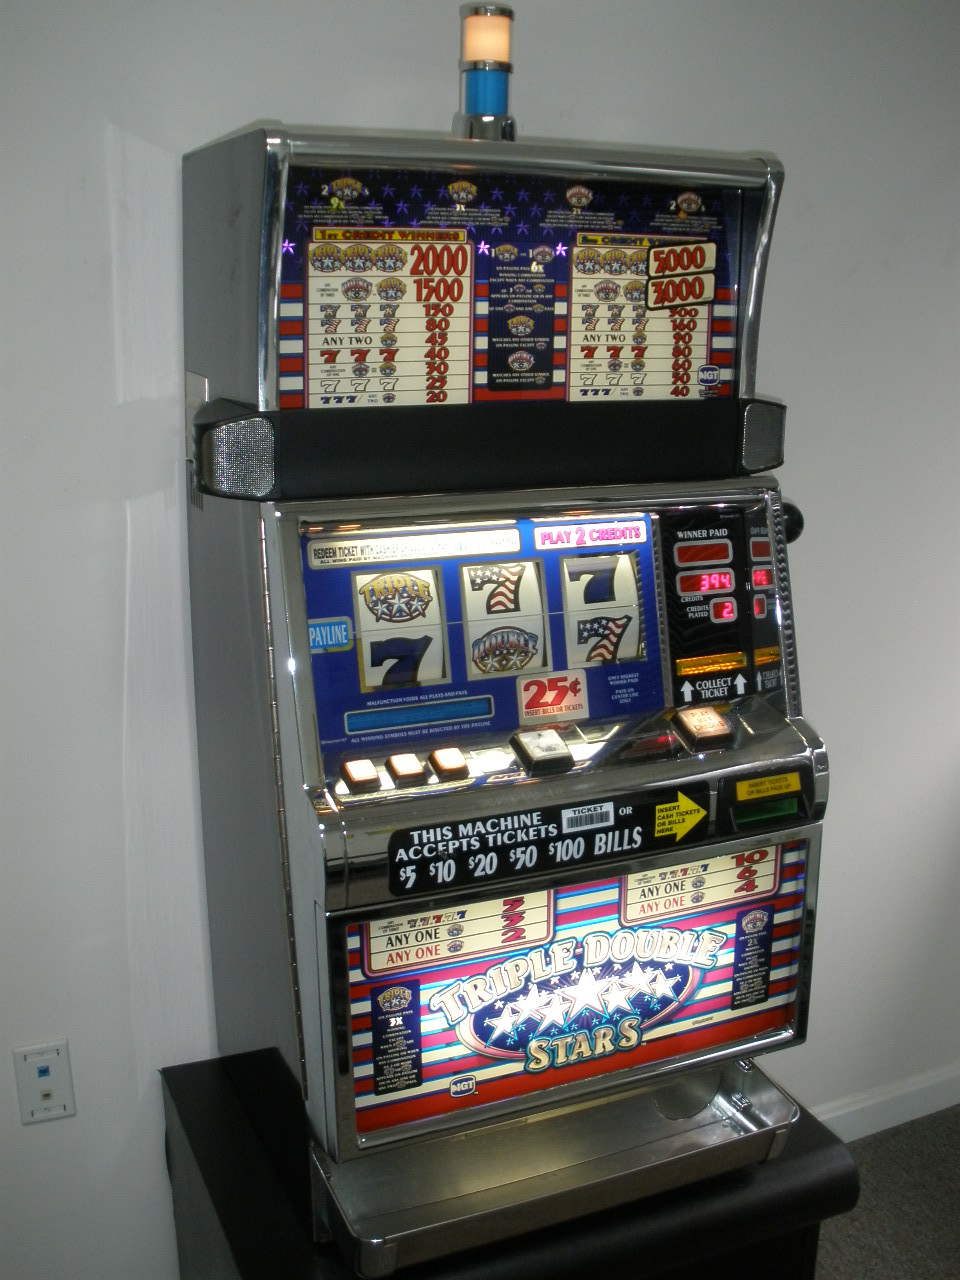 triple double stars slot machine